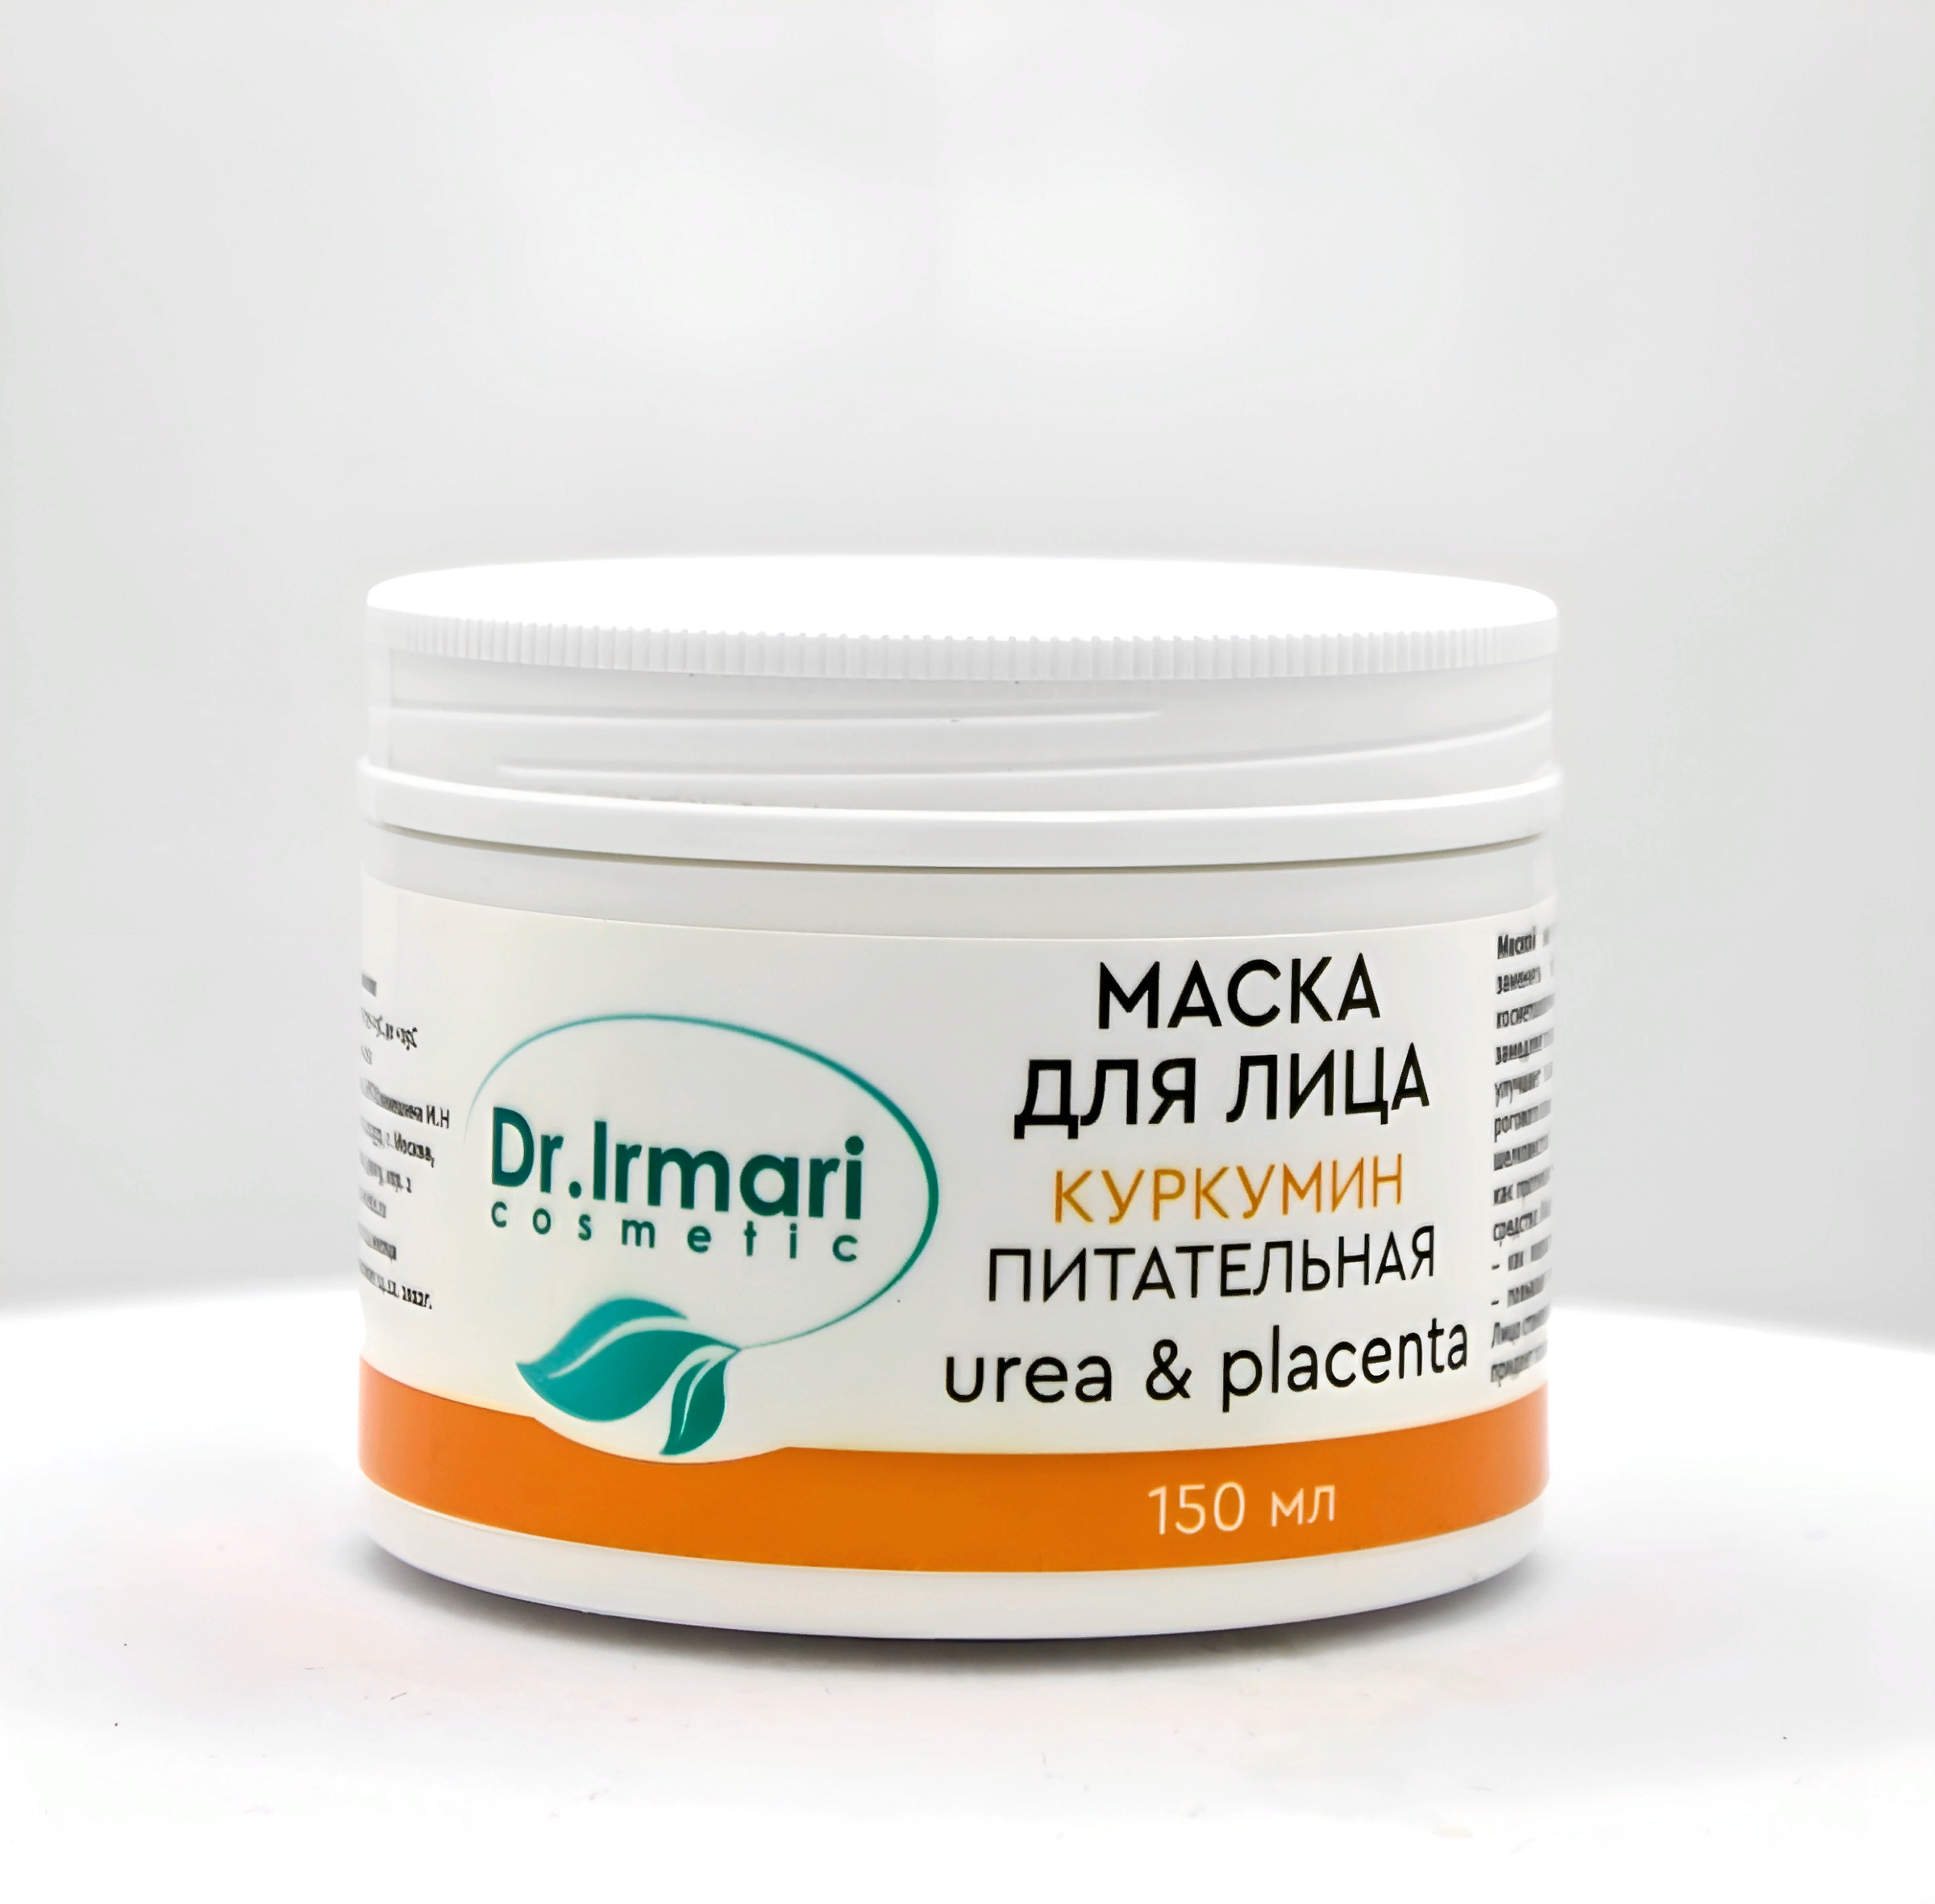 Маска для лица Dr.Irmari cosmetic Urea & Placenta Куркумин питательная 150 мл пропеллер черная маска от прыщей с бамбуковым углём zinc 70